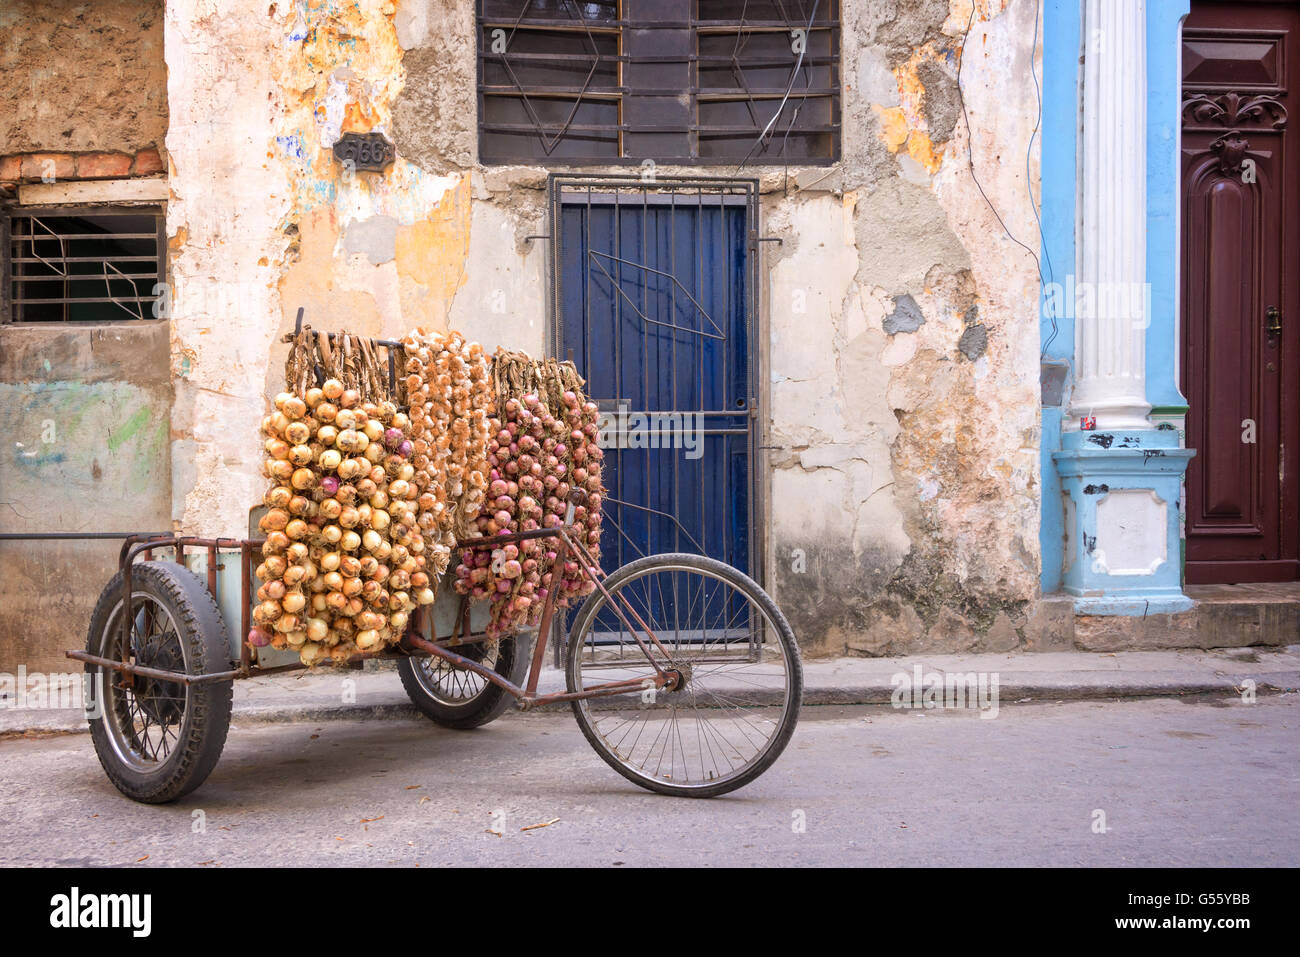 Zwiebeln-Verkäufer in einer Straße von Alt-Havanna, Kuba Stockfoto